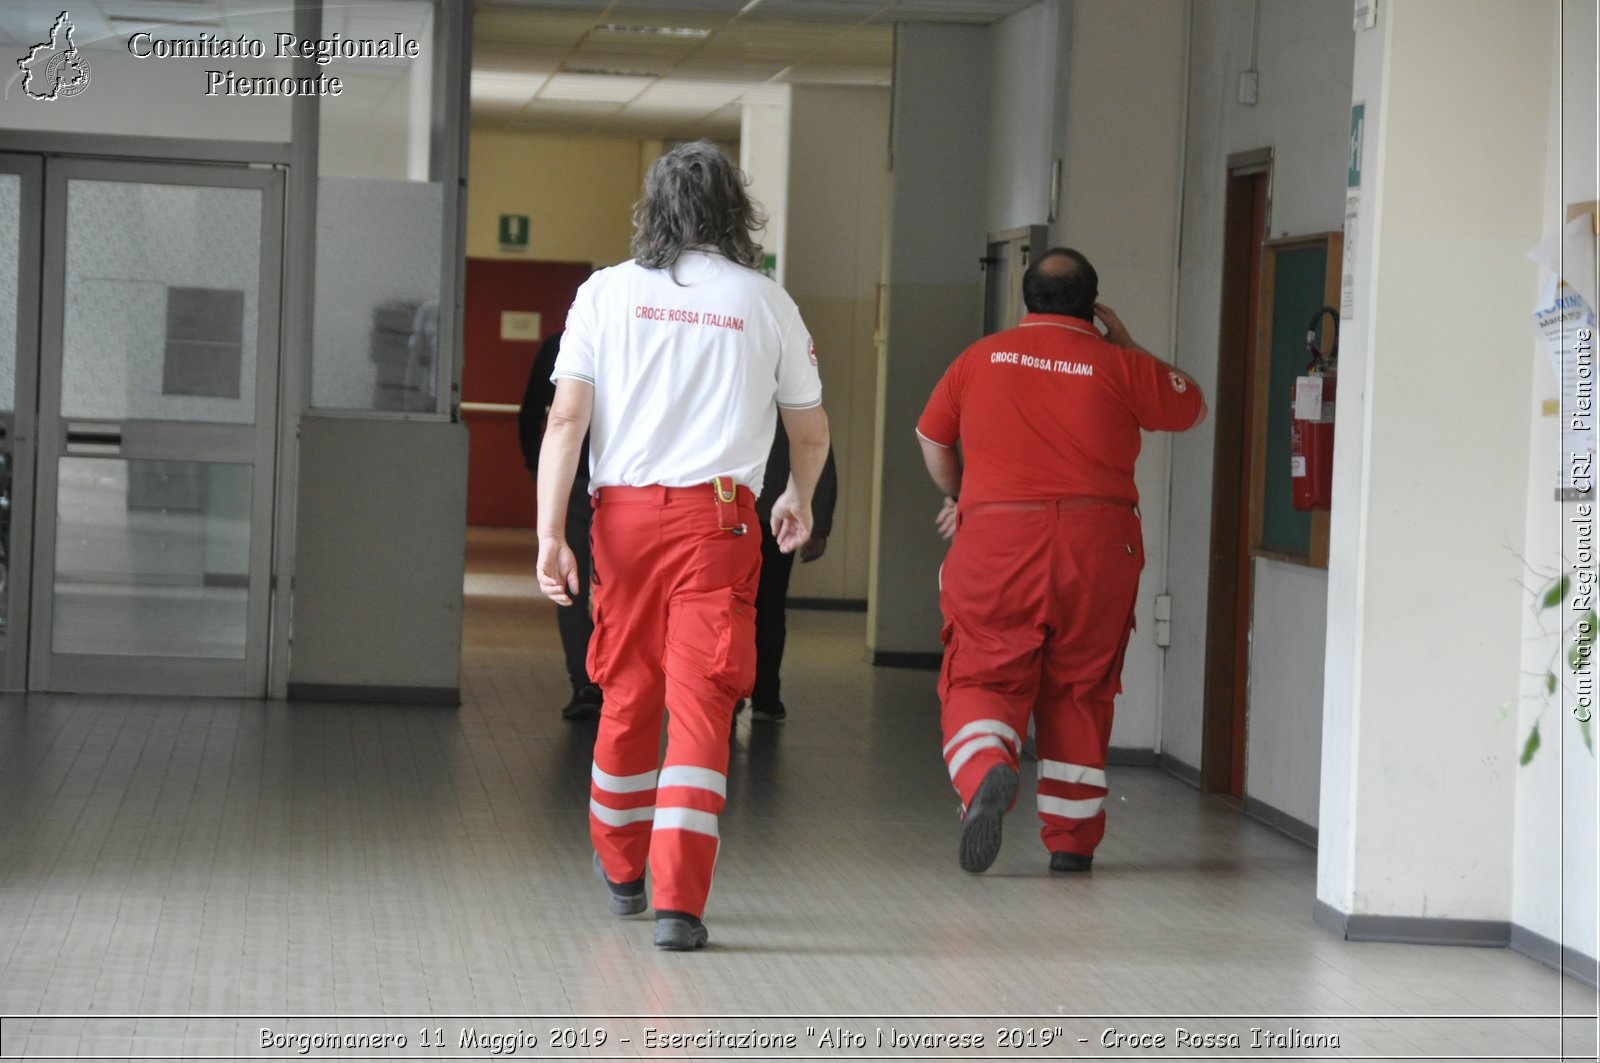 Borgomanero 11 Maggio 2019 - Esercitazione "Alto Novarese 2019" - Croce Rossa Italiana - Comitato Regionale del Piemonte